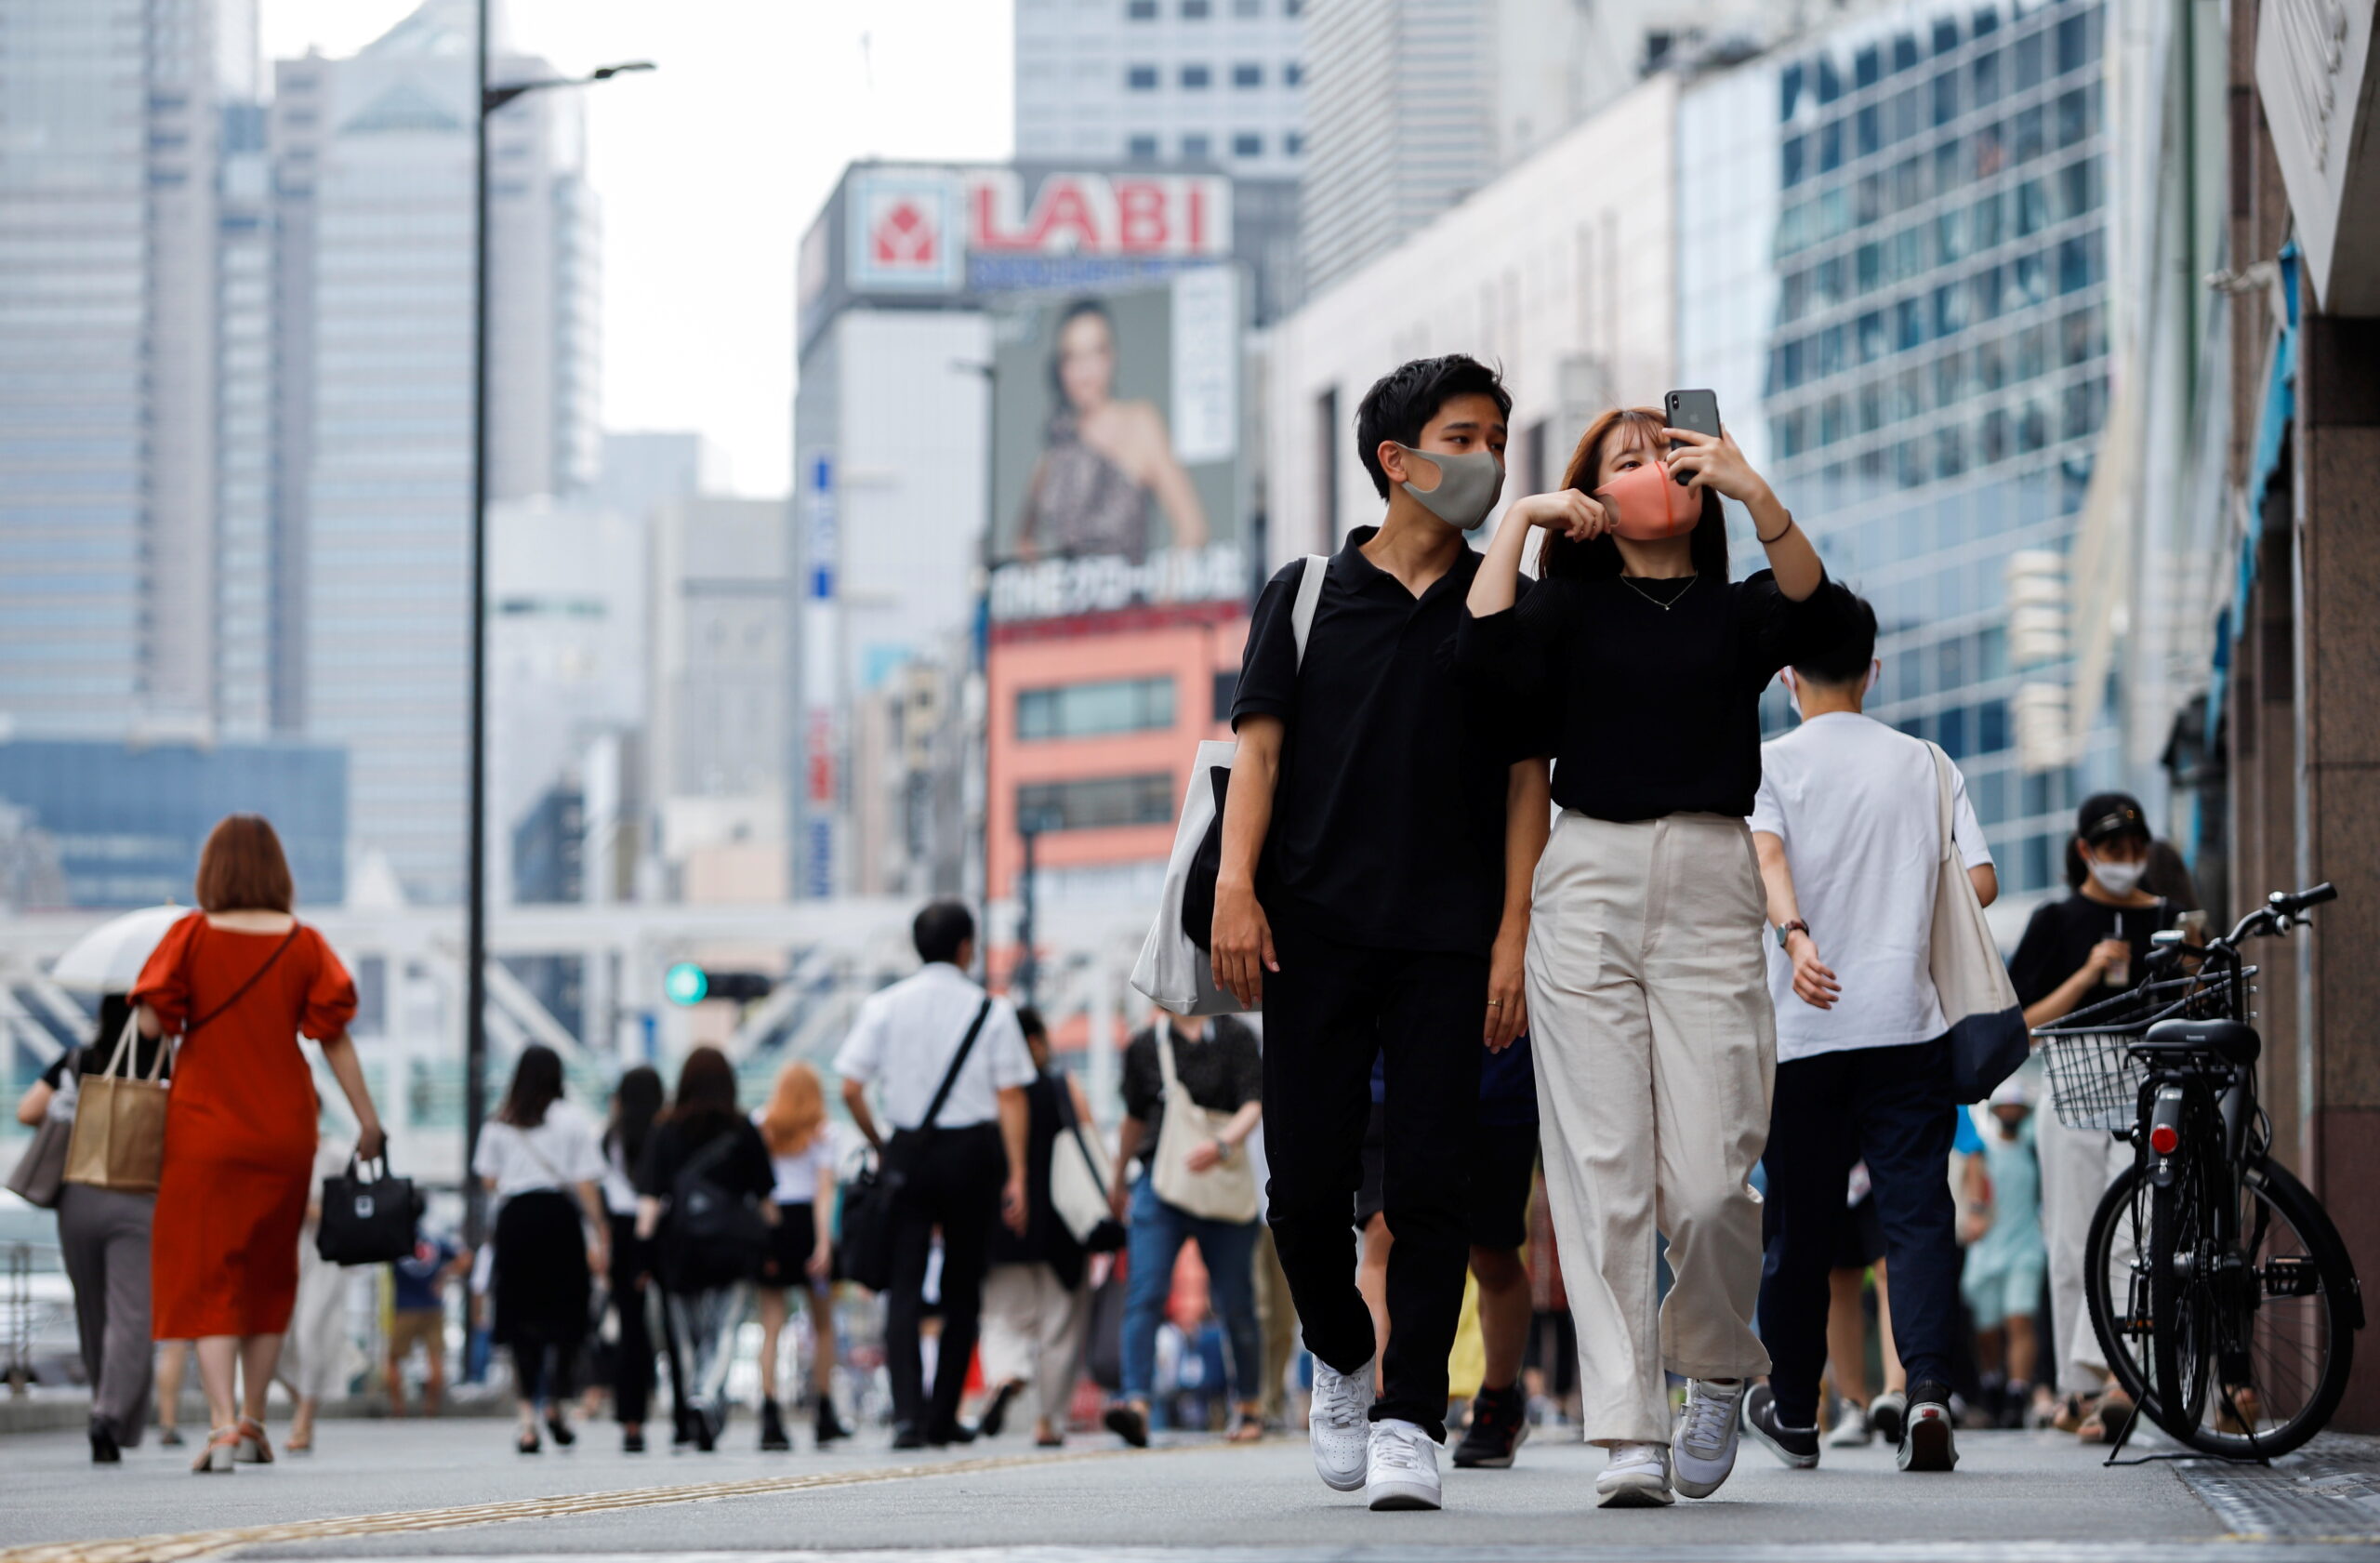 “โตเกียว” ยอดติดเชื้อโควิด-19 นิวไฮทะลุ 3,000 คนต่อวัน – ต่างประเทศ